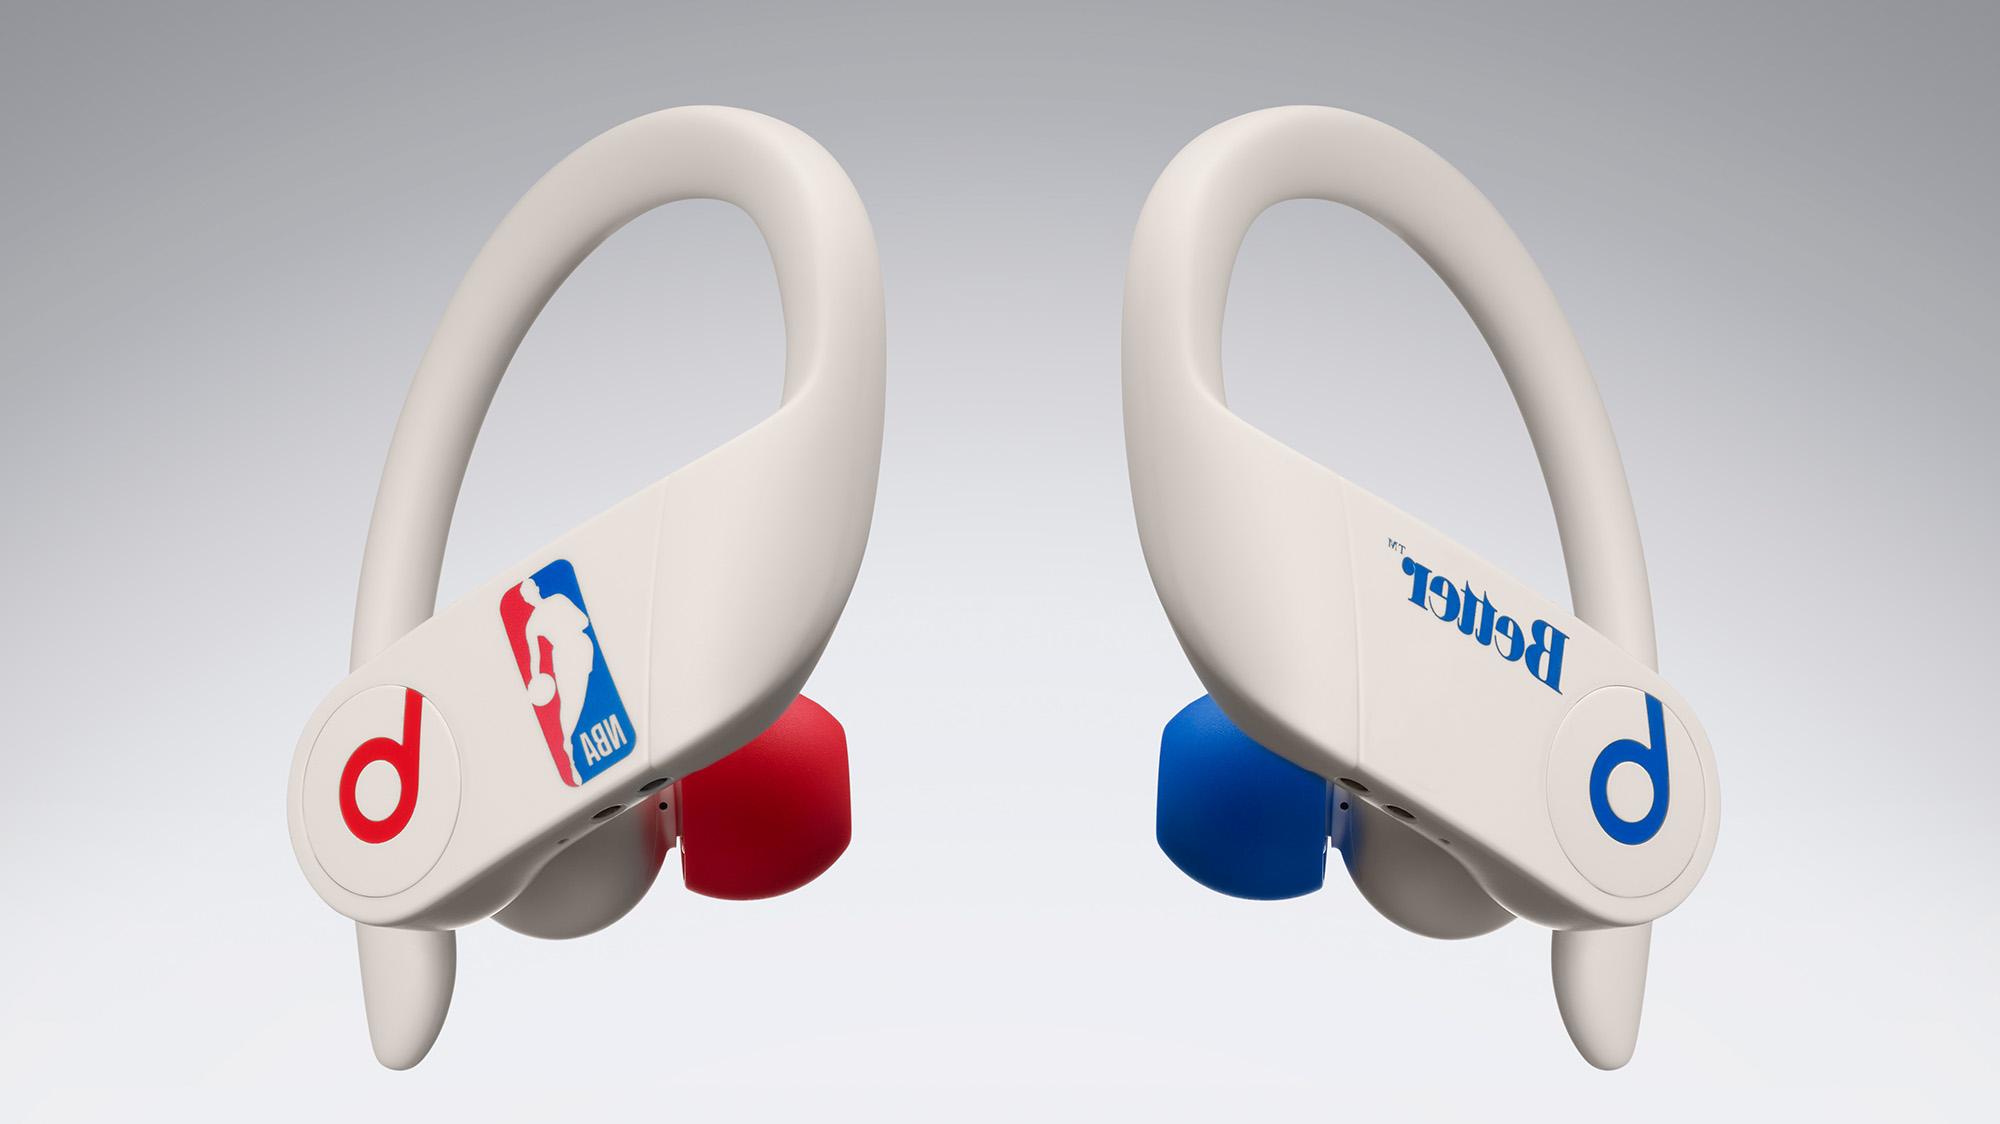 Para los fanáticos de la NBA: Apple presentó una versión especial de Powerbeats Pro